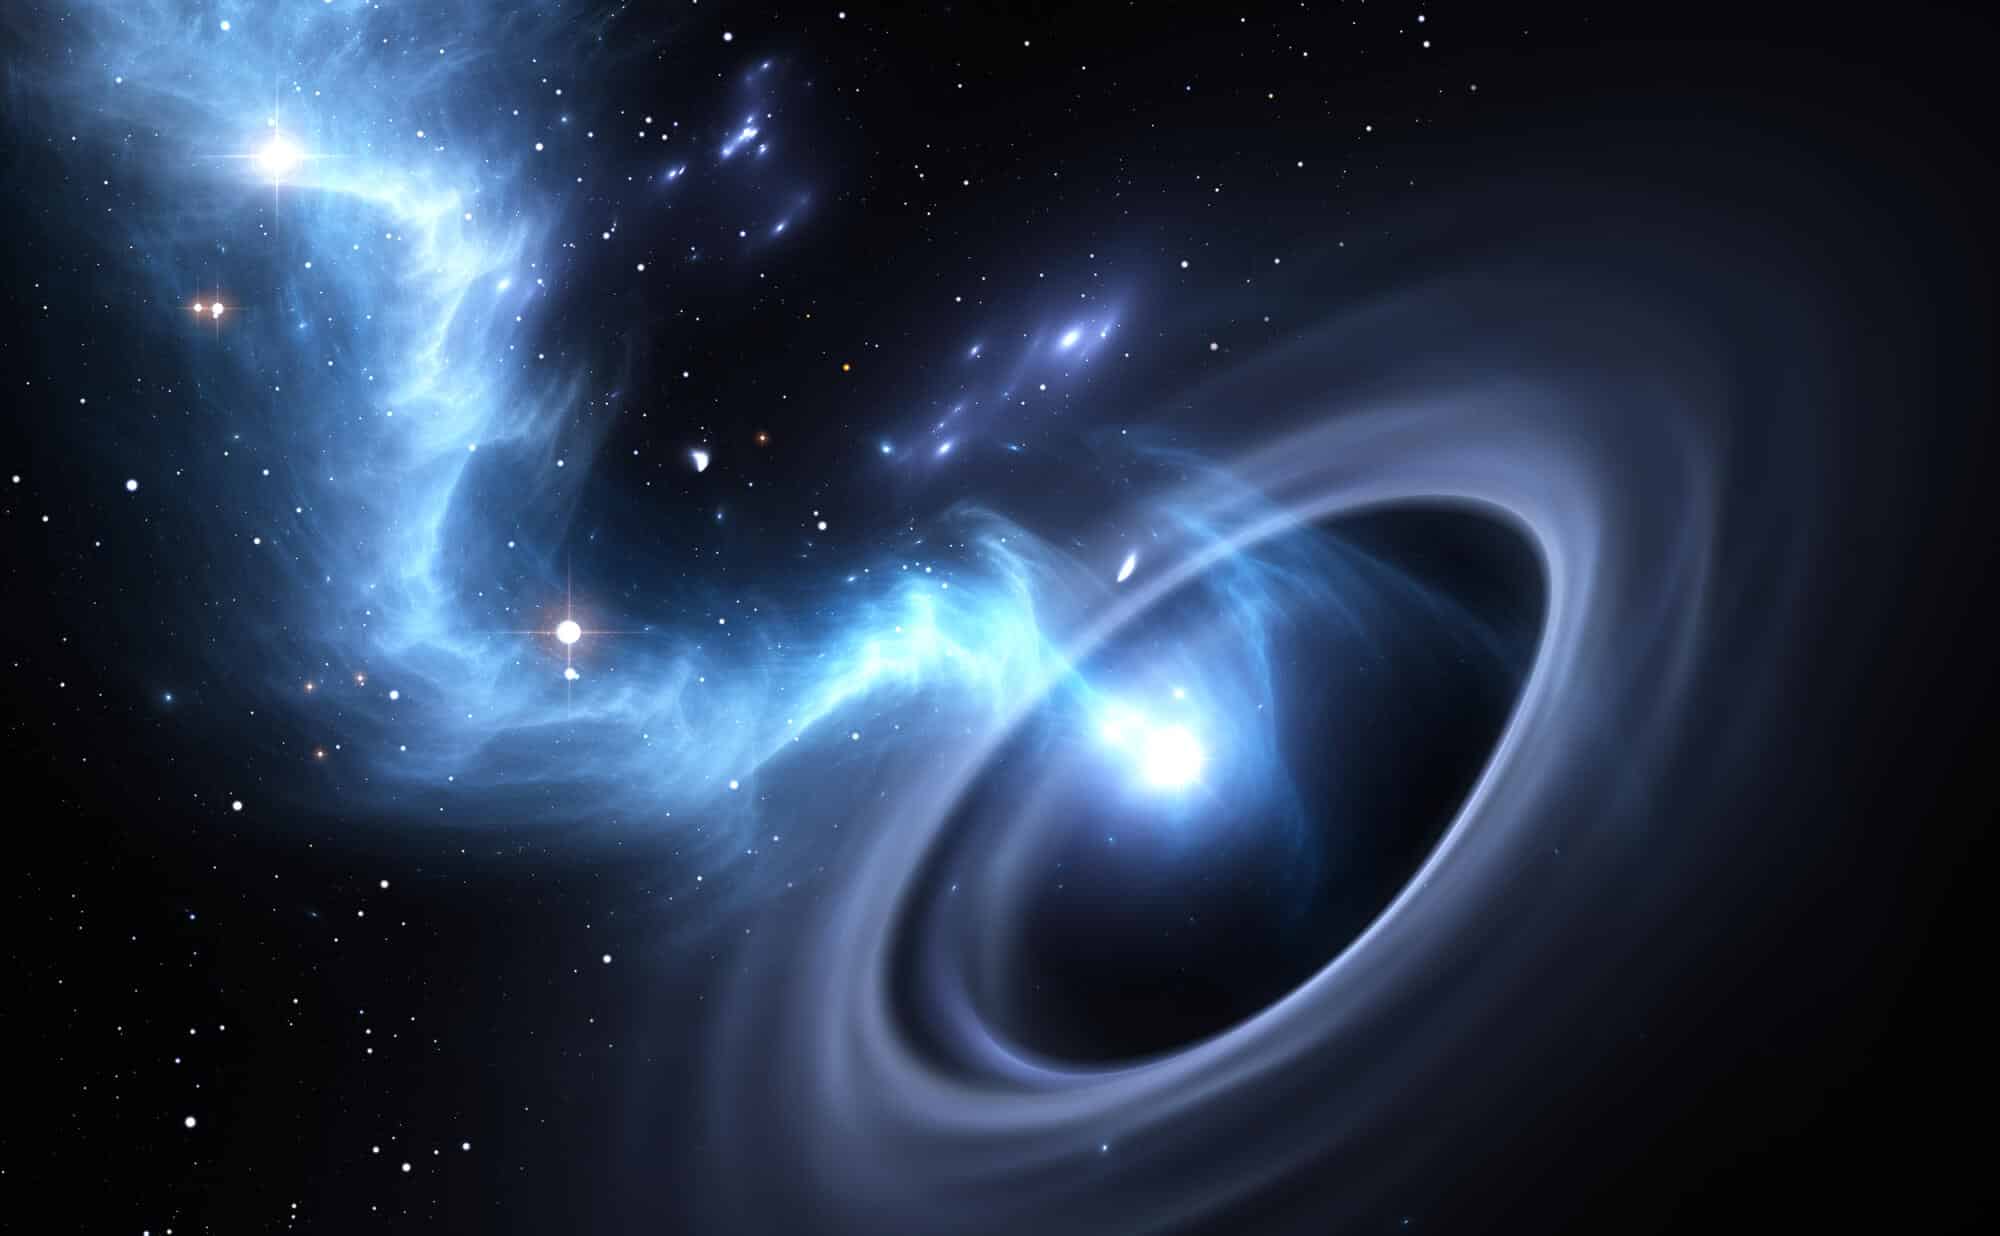 אסטרונומים חושבים שהבחינו לראשונה בחור שחור 'בלתי נראה' thumbnail